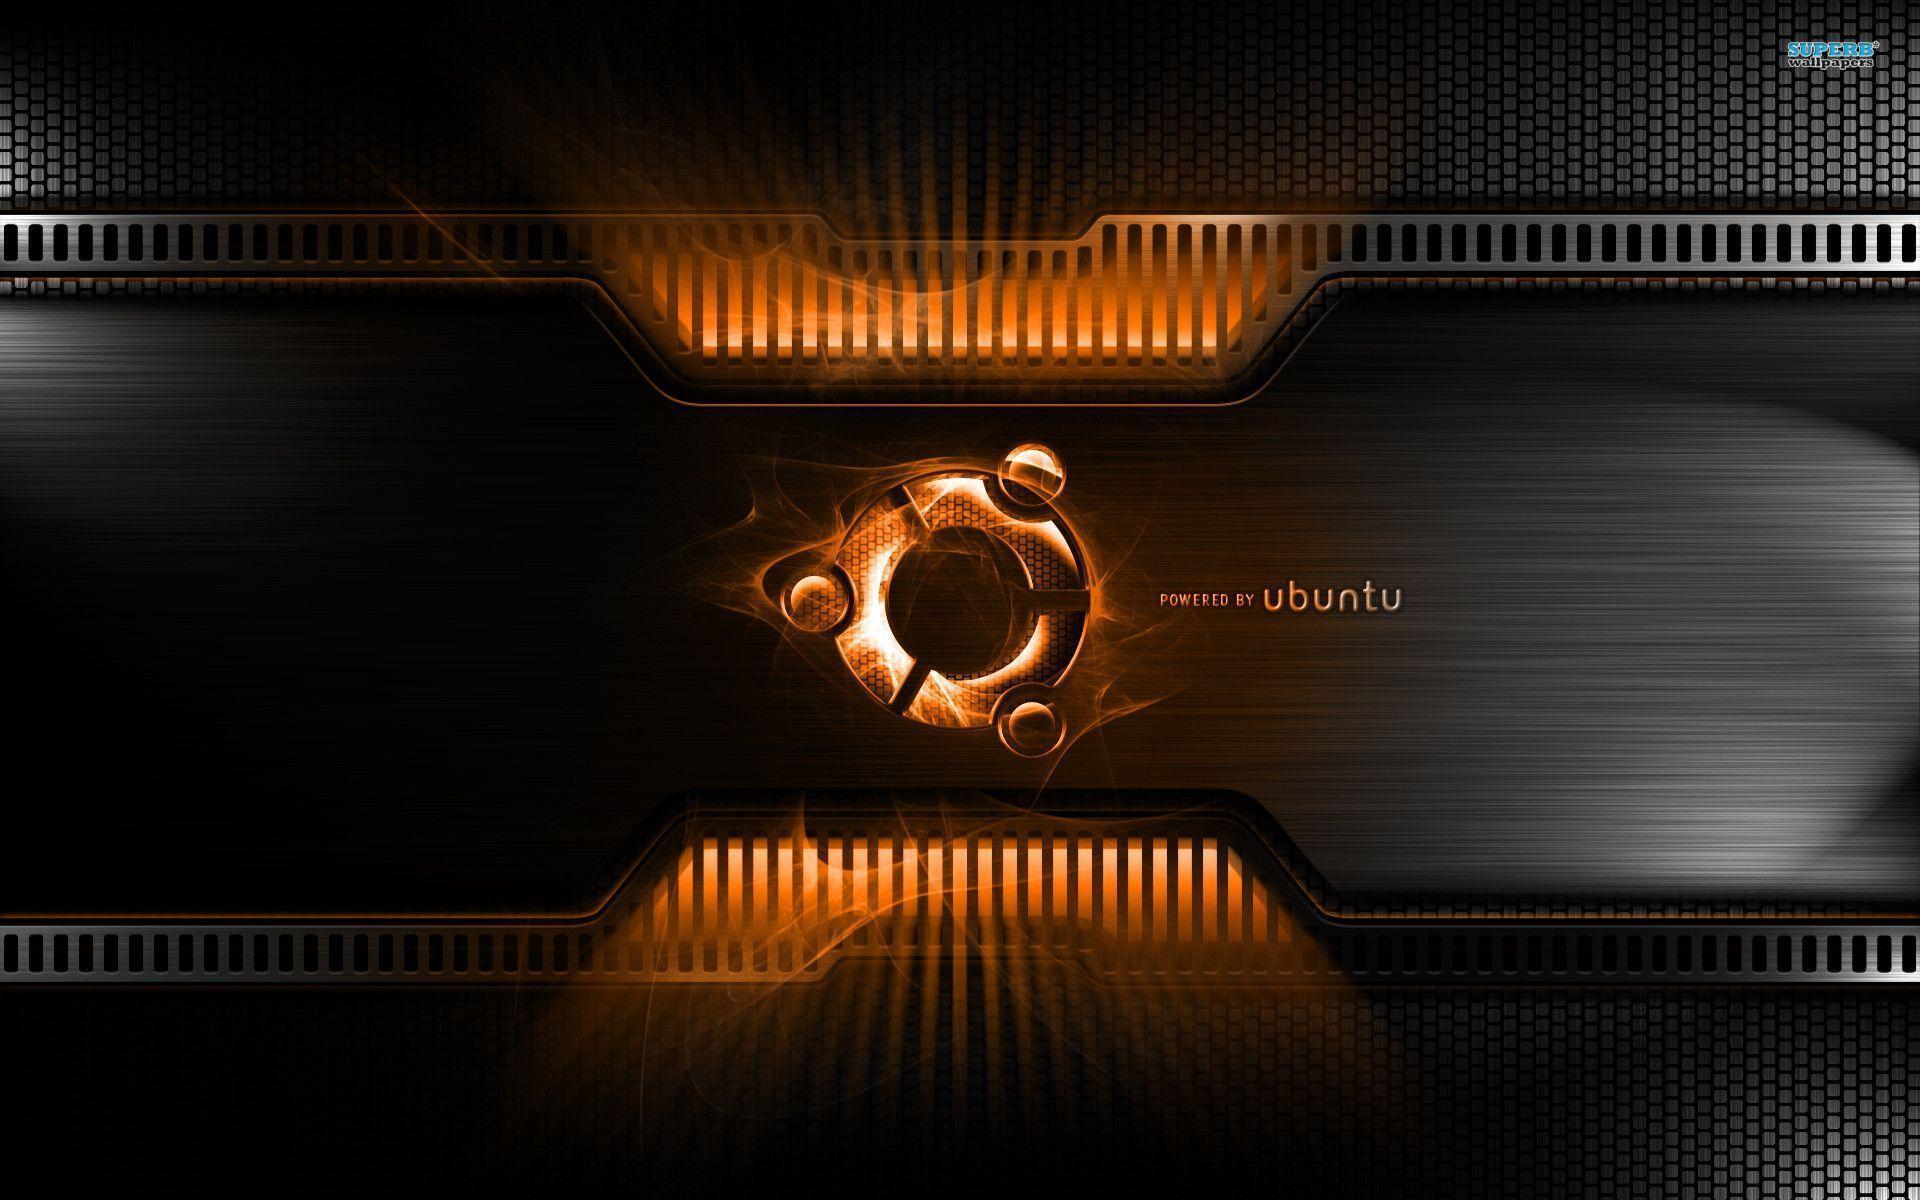 Ubuntu wallpaper wallpaper - #